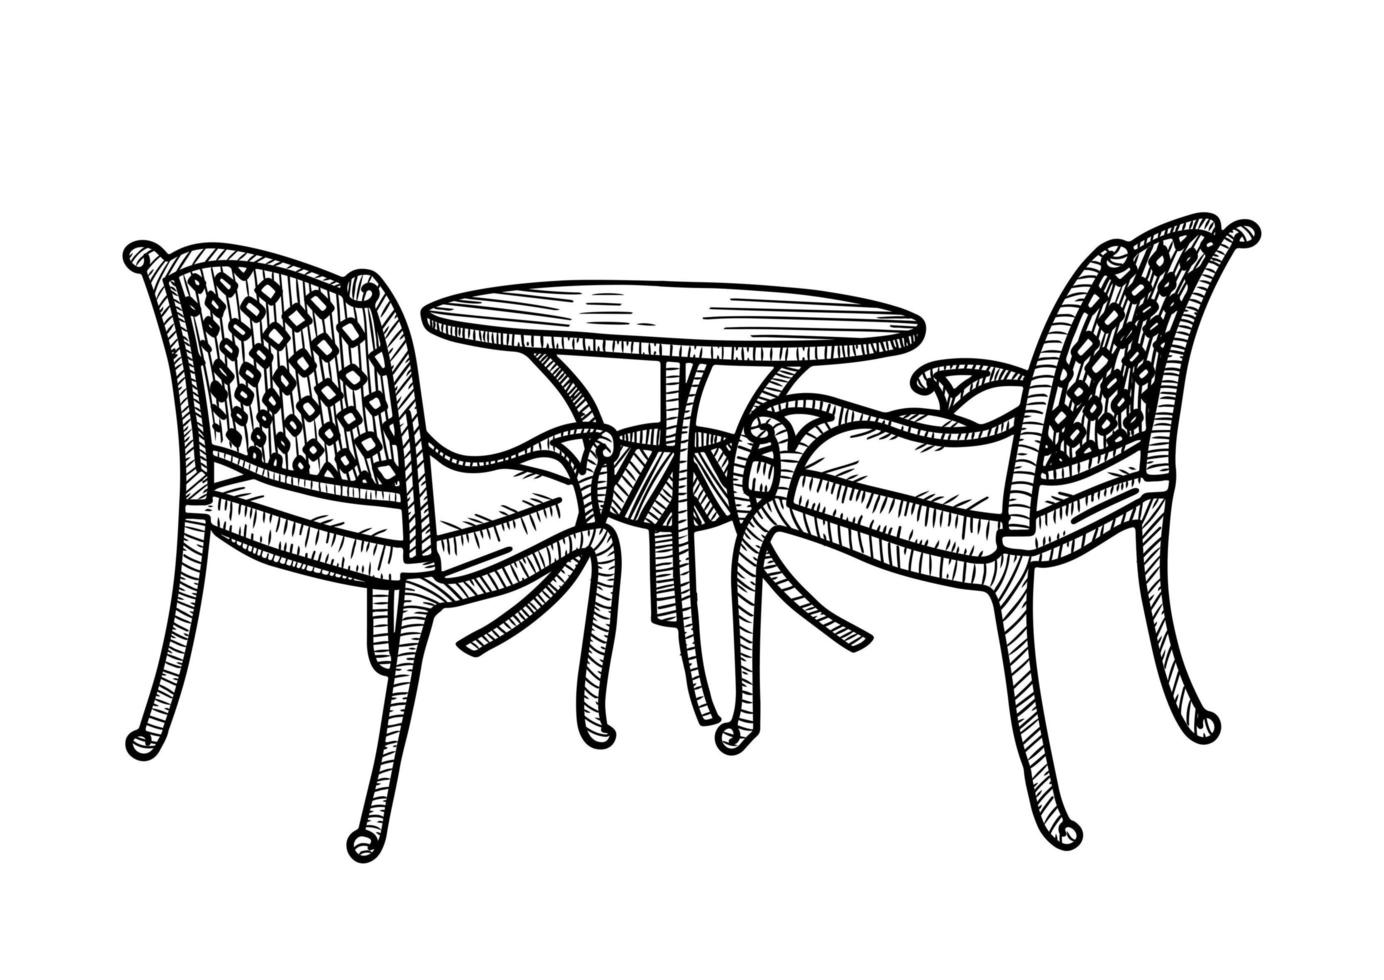 mobilier d'extérieur de rue dans le café d'été. petite table ronde avec deux fauteuils en osier. croquis de vecteur illustration dessinée à la main.